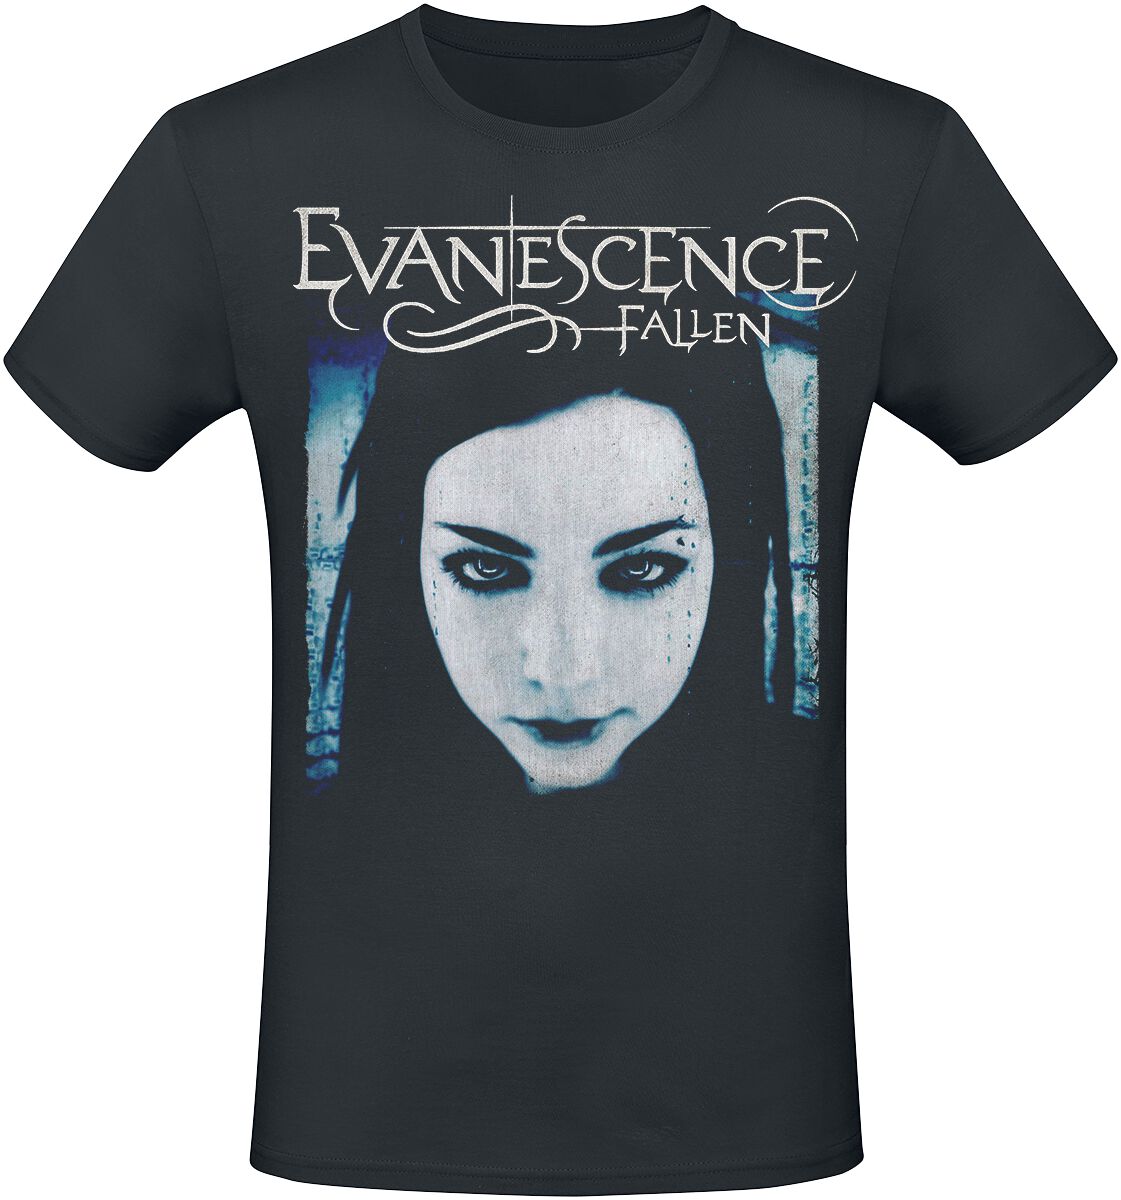 Evanescence Fallen T-Shirt schwarz in XXL